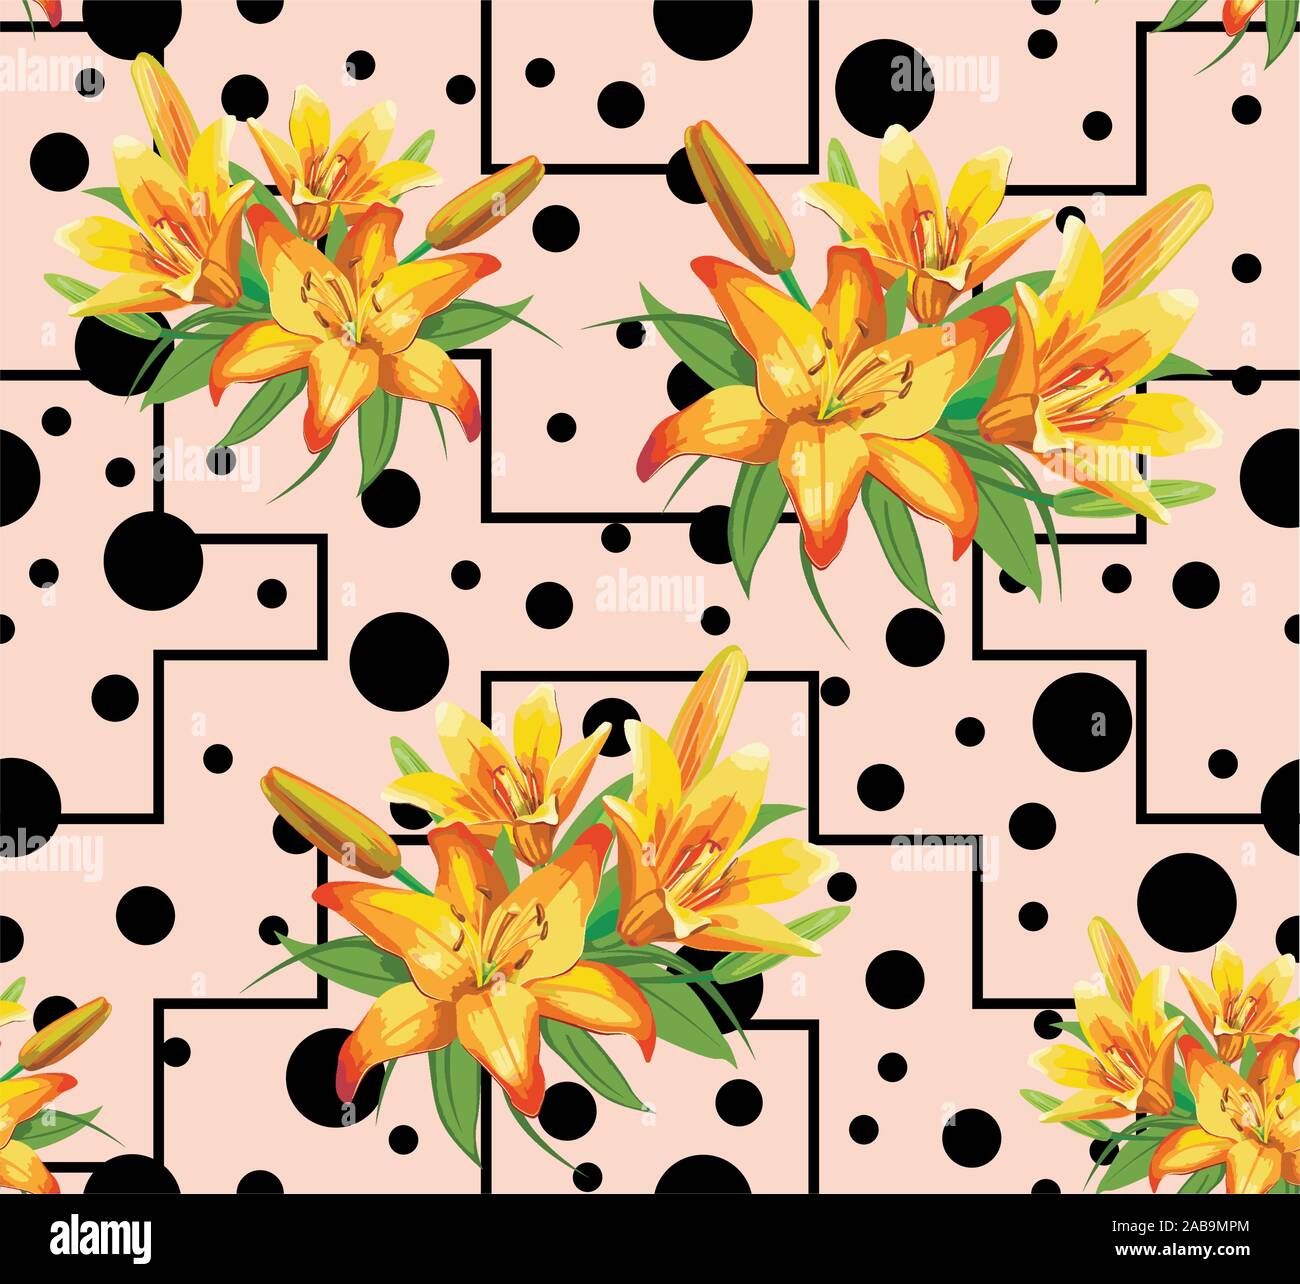 Giallo fiori lilium pattern con forme geometriche. Turni di nero e linee. - Vettore Illustrazione Vettoriale